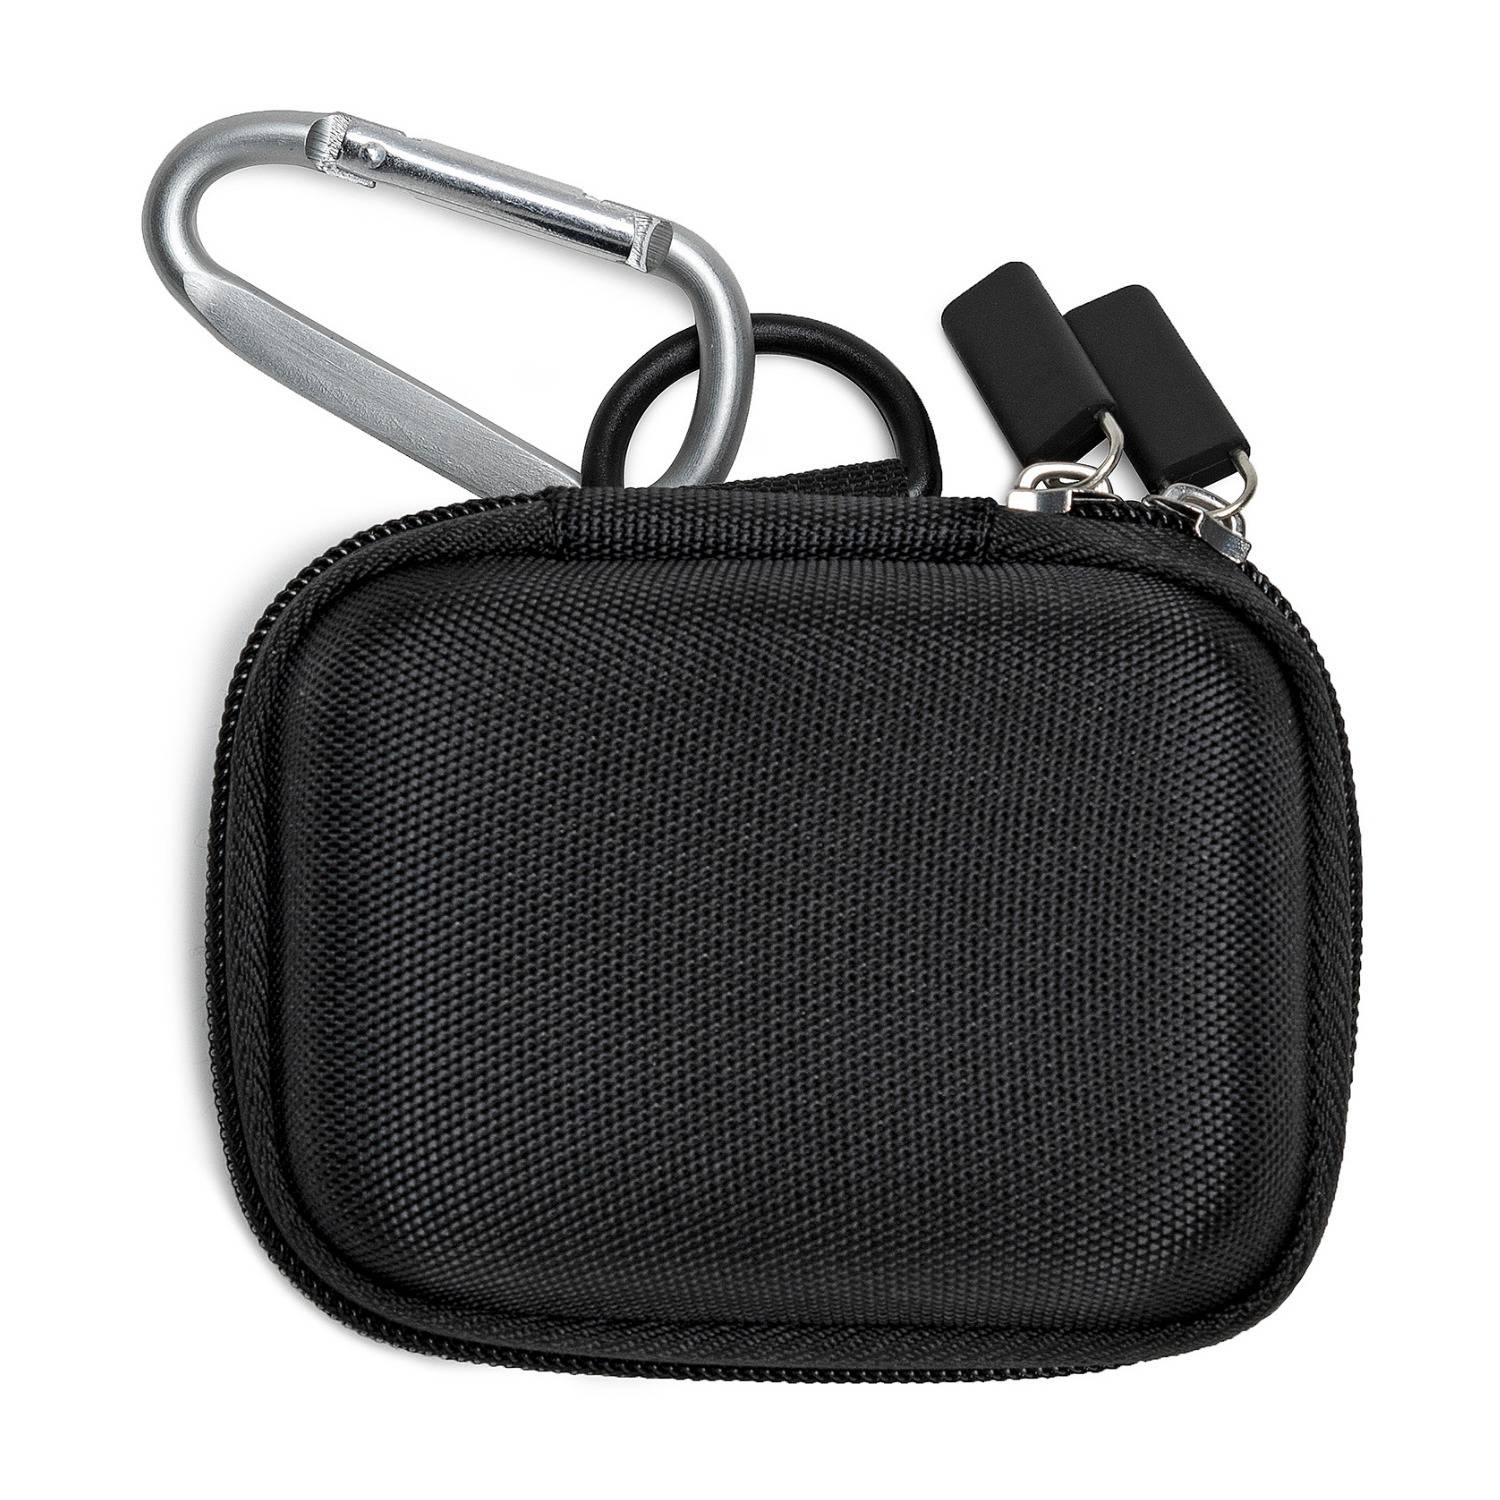 Knox Gear Hard EVA Travel Case for Sony WF-1000XM3 Wireless Earbuds (Black)